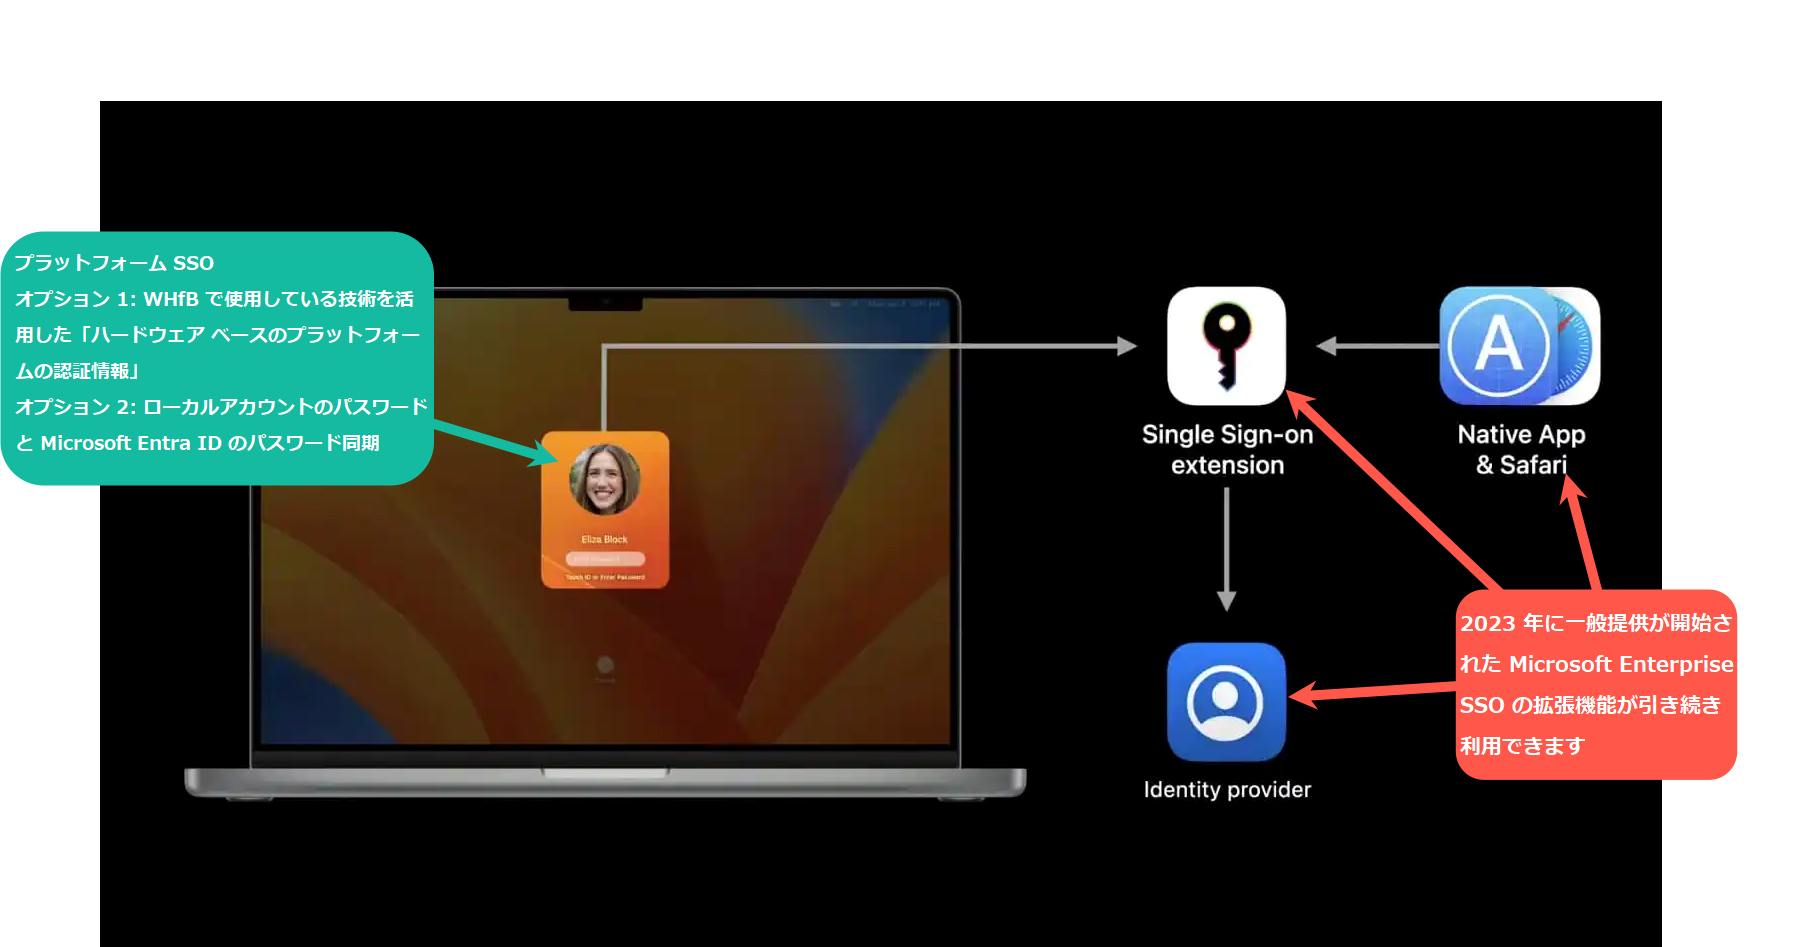 プラットフォーム SSO  は、macOS の既存の SSO 拡張機能を強化したもので、ユーザーは「パスワードレスの資格情報」または「Microsoft Entra ID によって管理および検証されたパスワード」を使用して Mac にサインインすることができます。